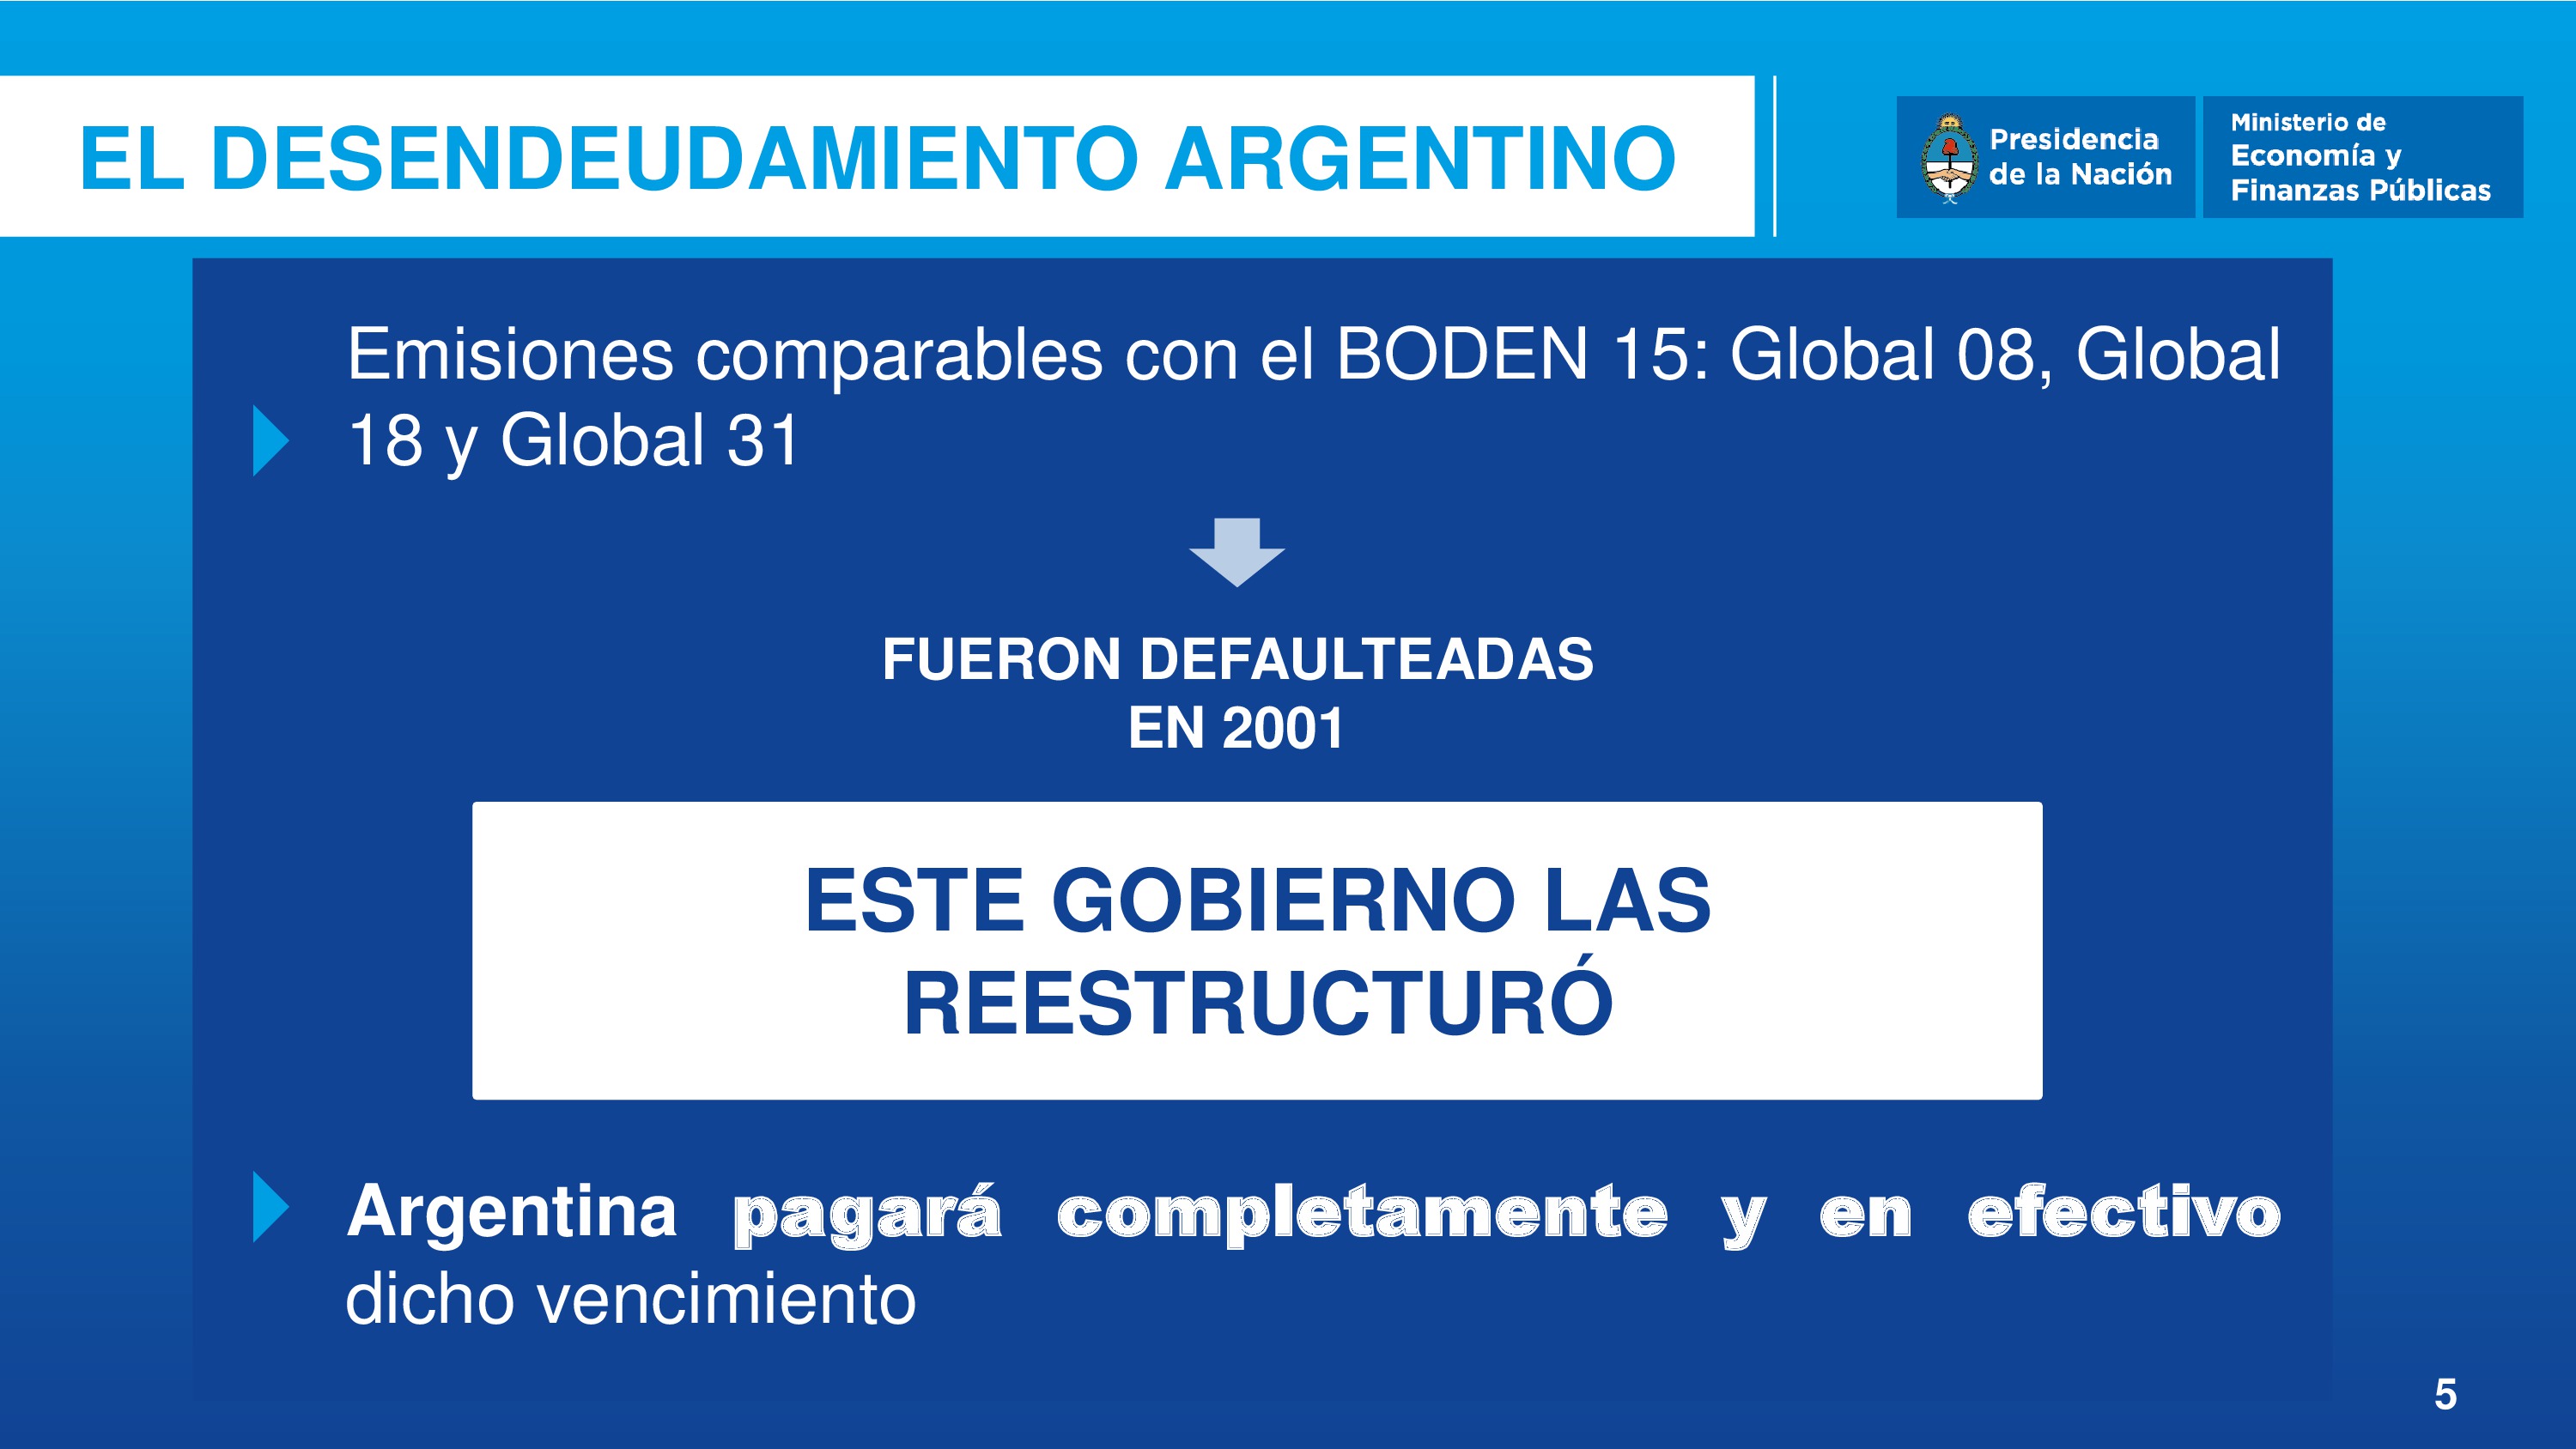 Hoy la Argentina ha cerrado el último capítulo del gran endeudamiento argentino ‪#‎Boden2015‬